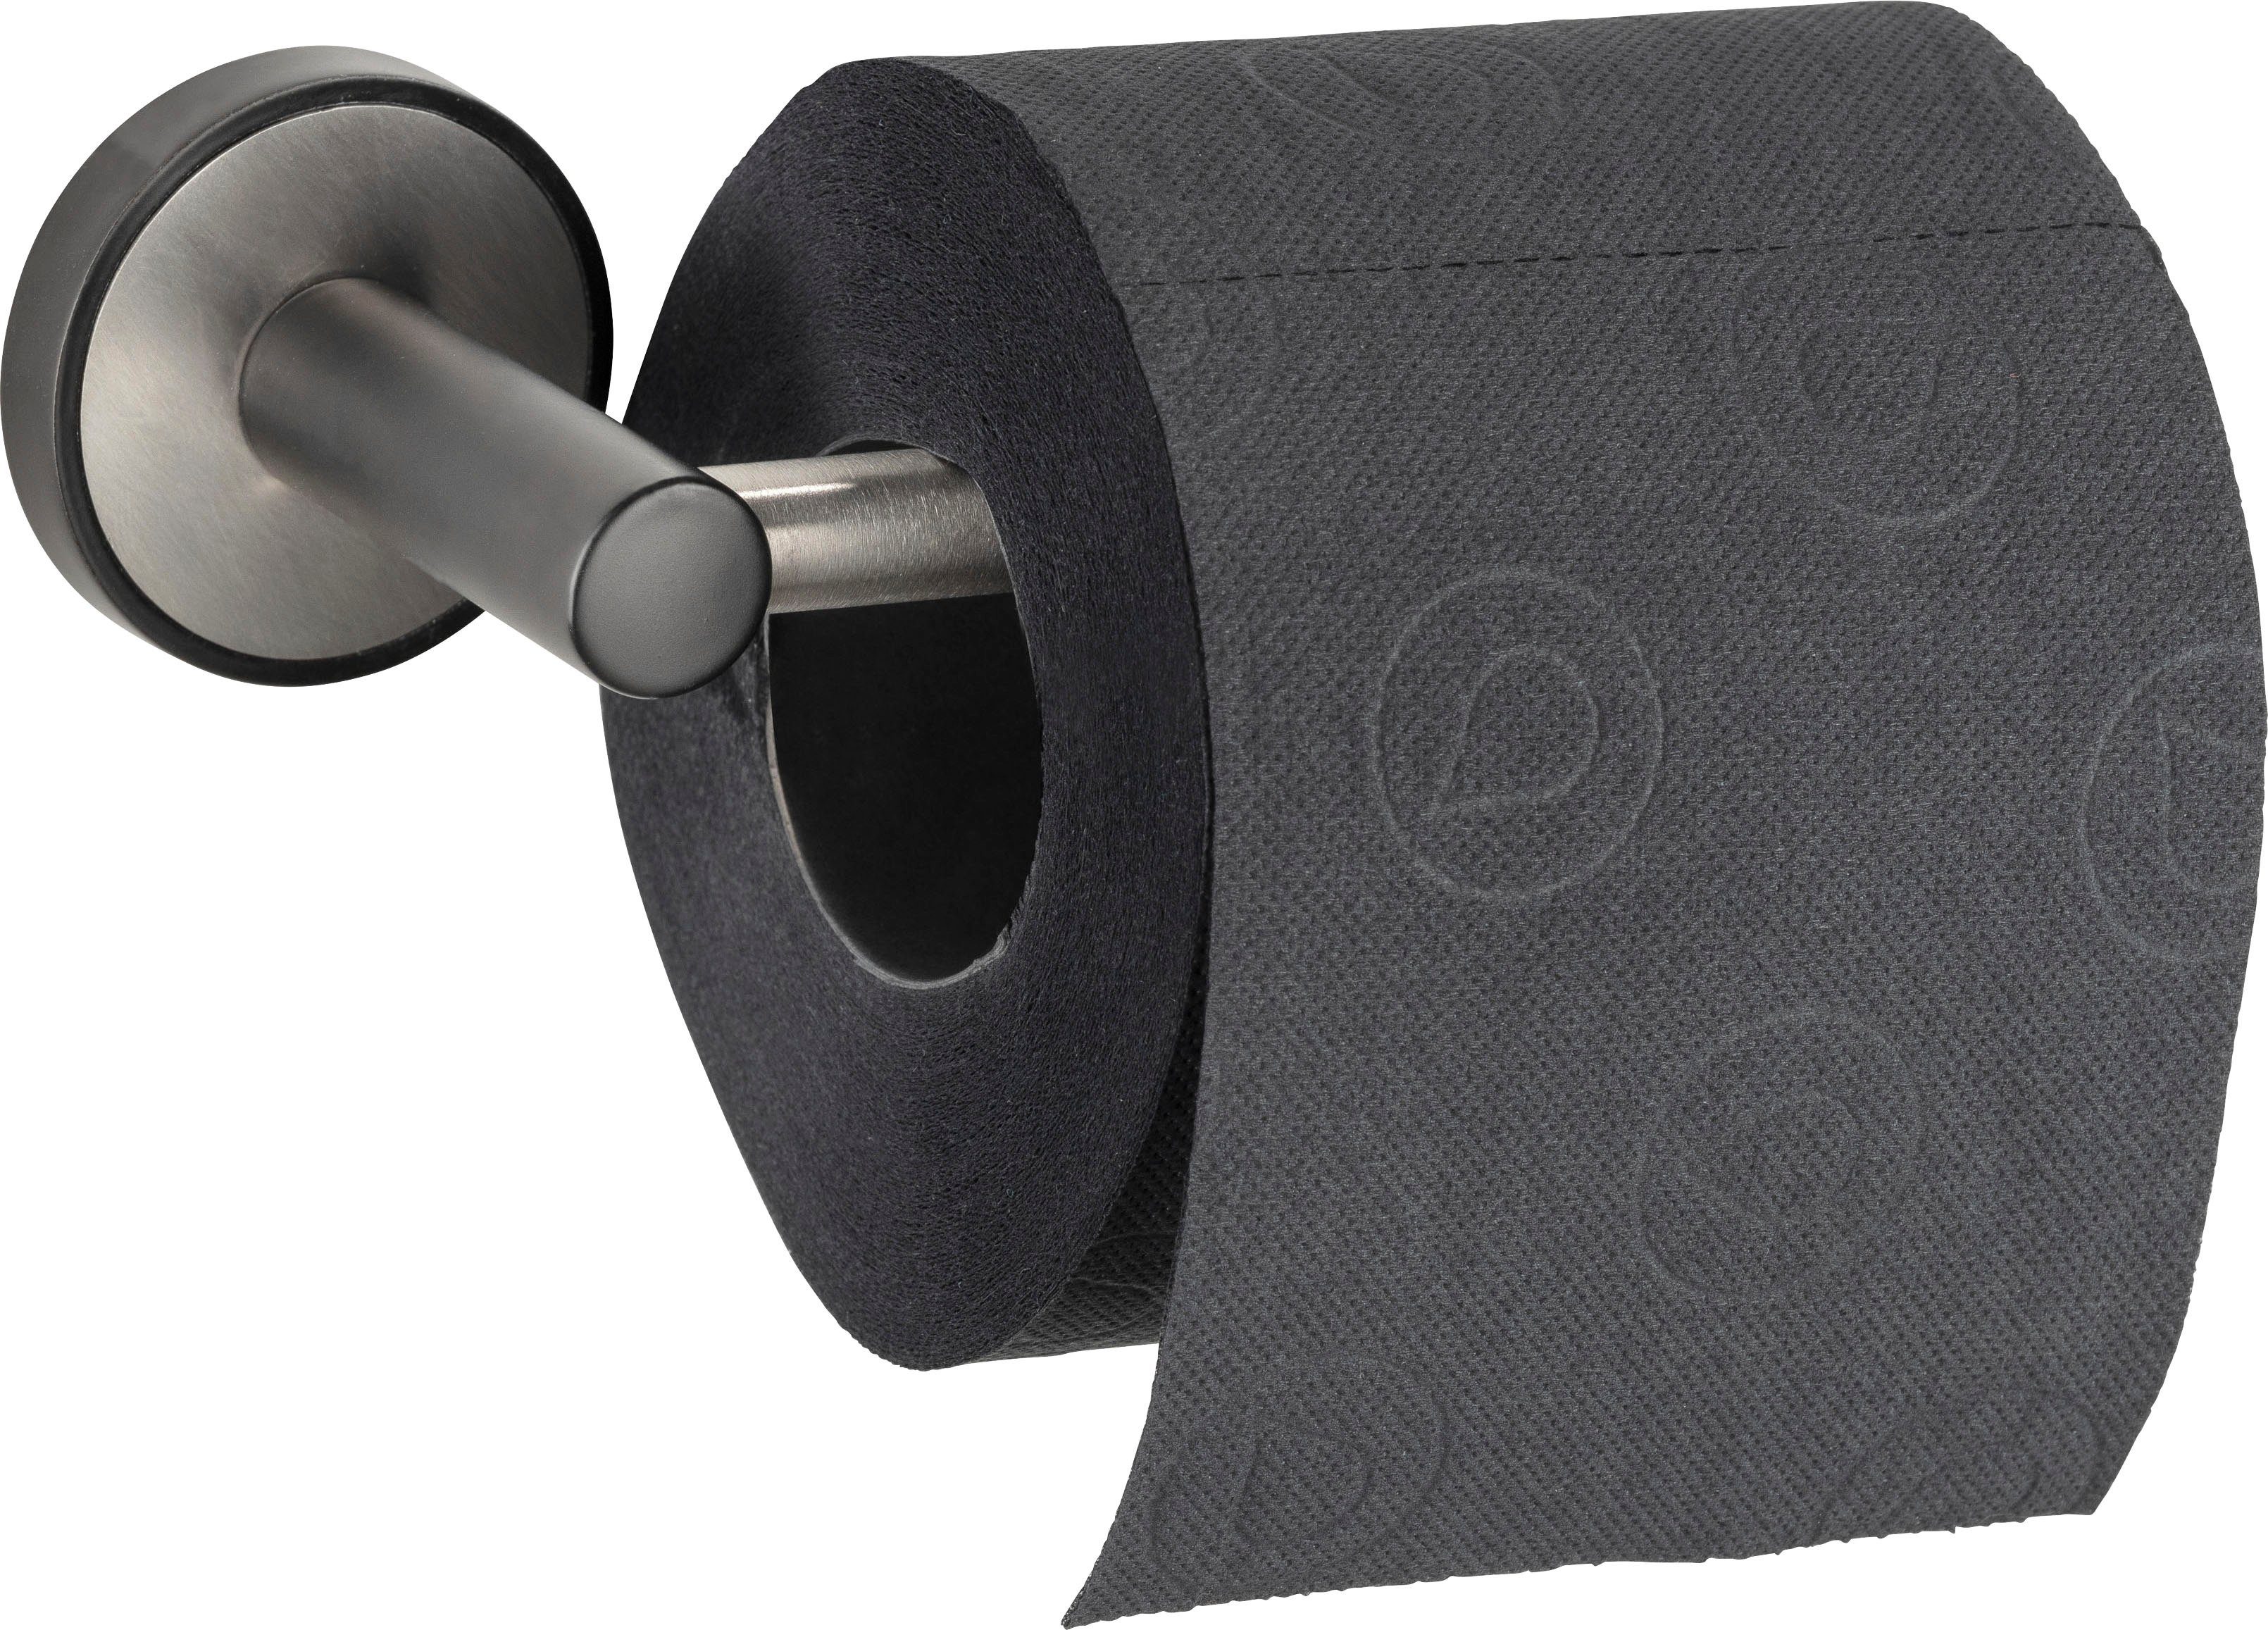 UV-Loc® ohne Toilettenpapierhalter Udine, Befestigen WENKO Bohren